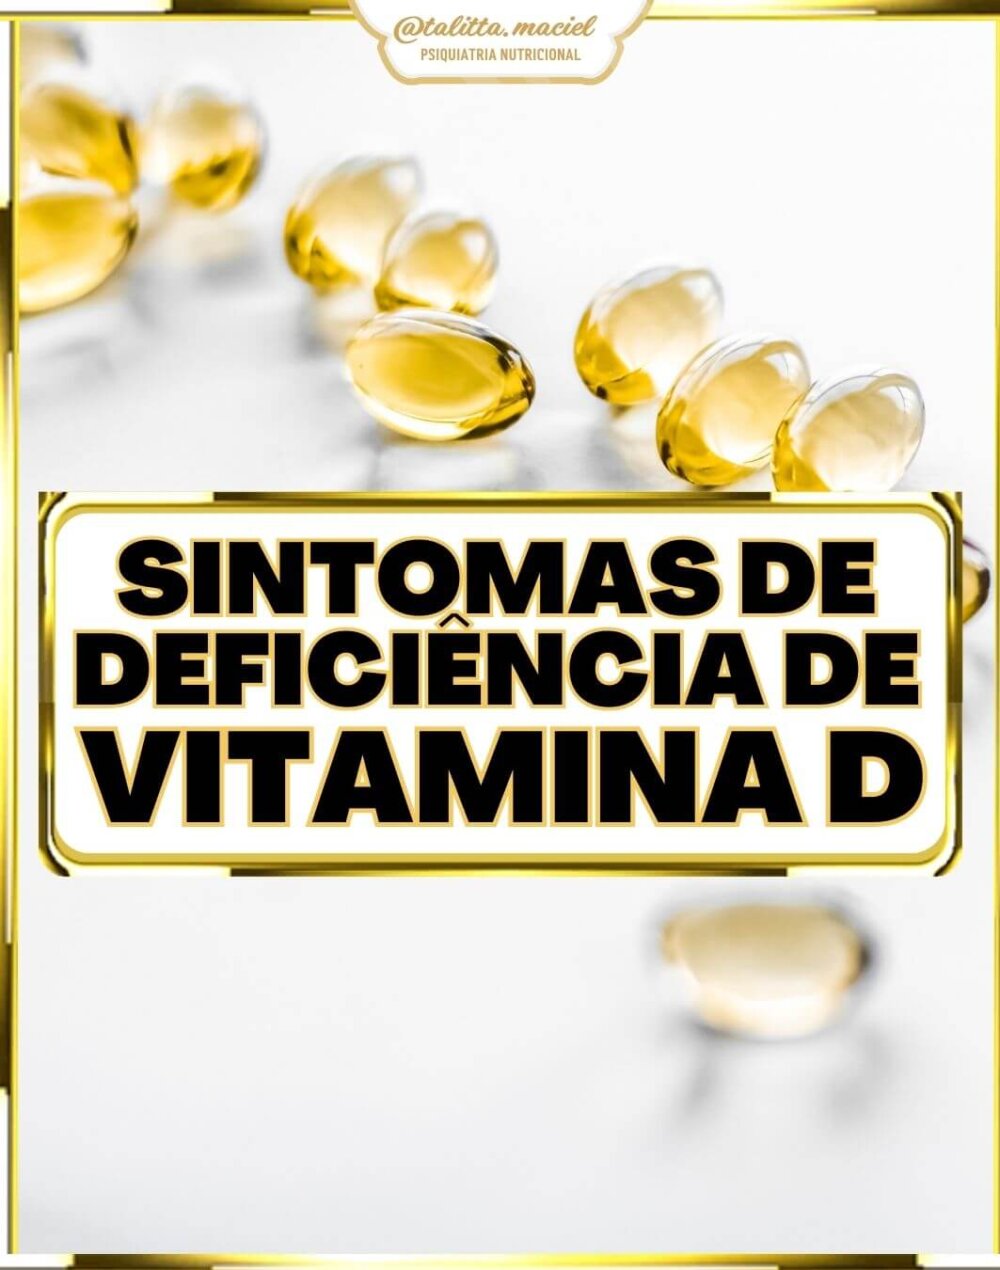 Sintomas de deficiência de vitamina D